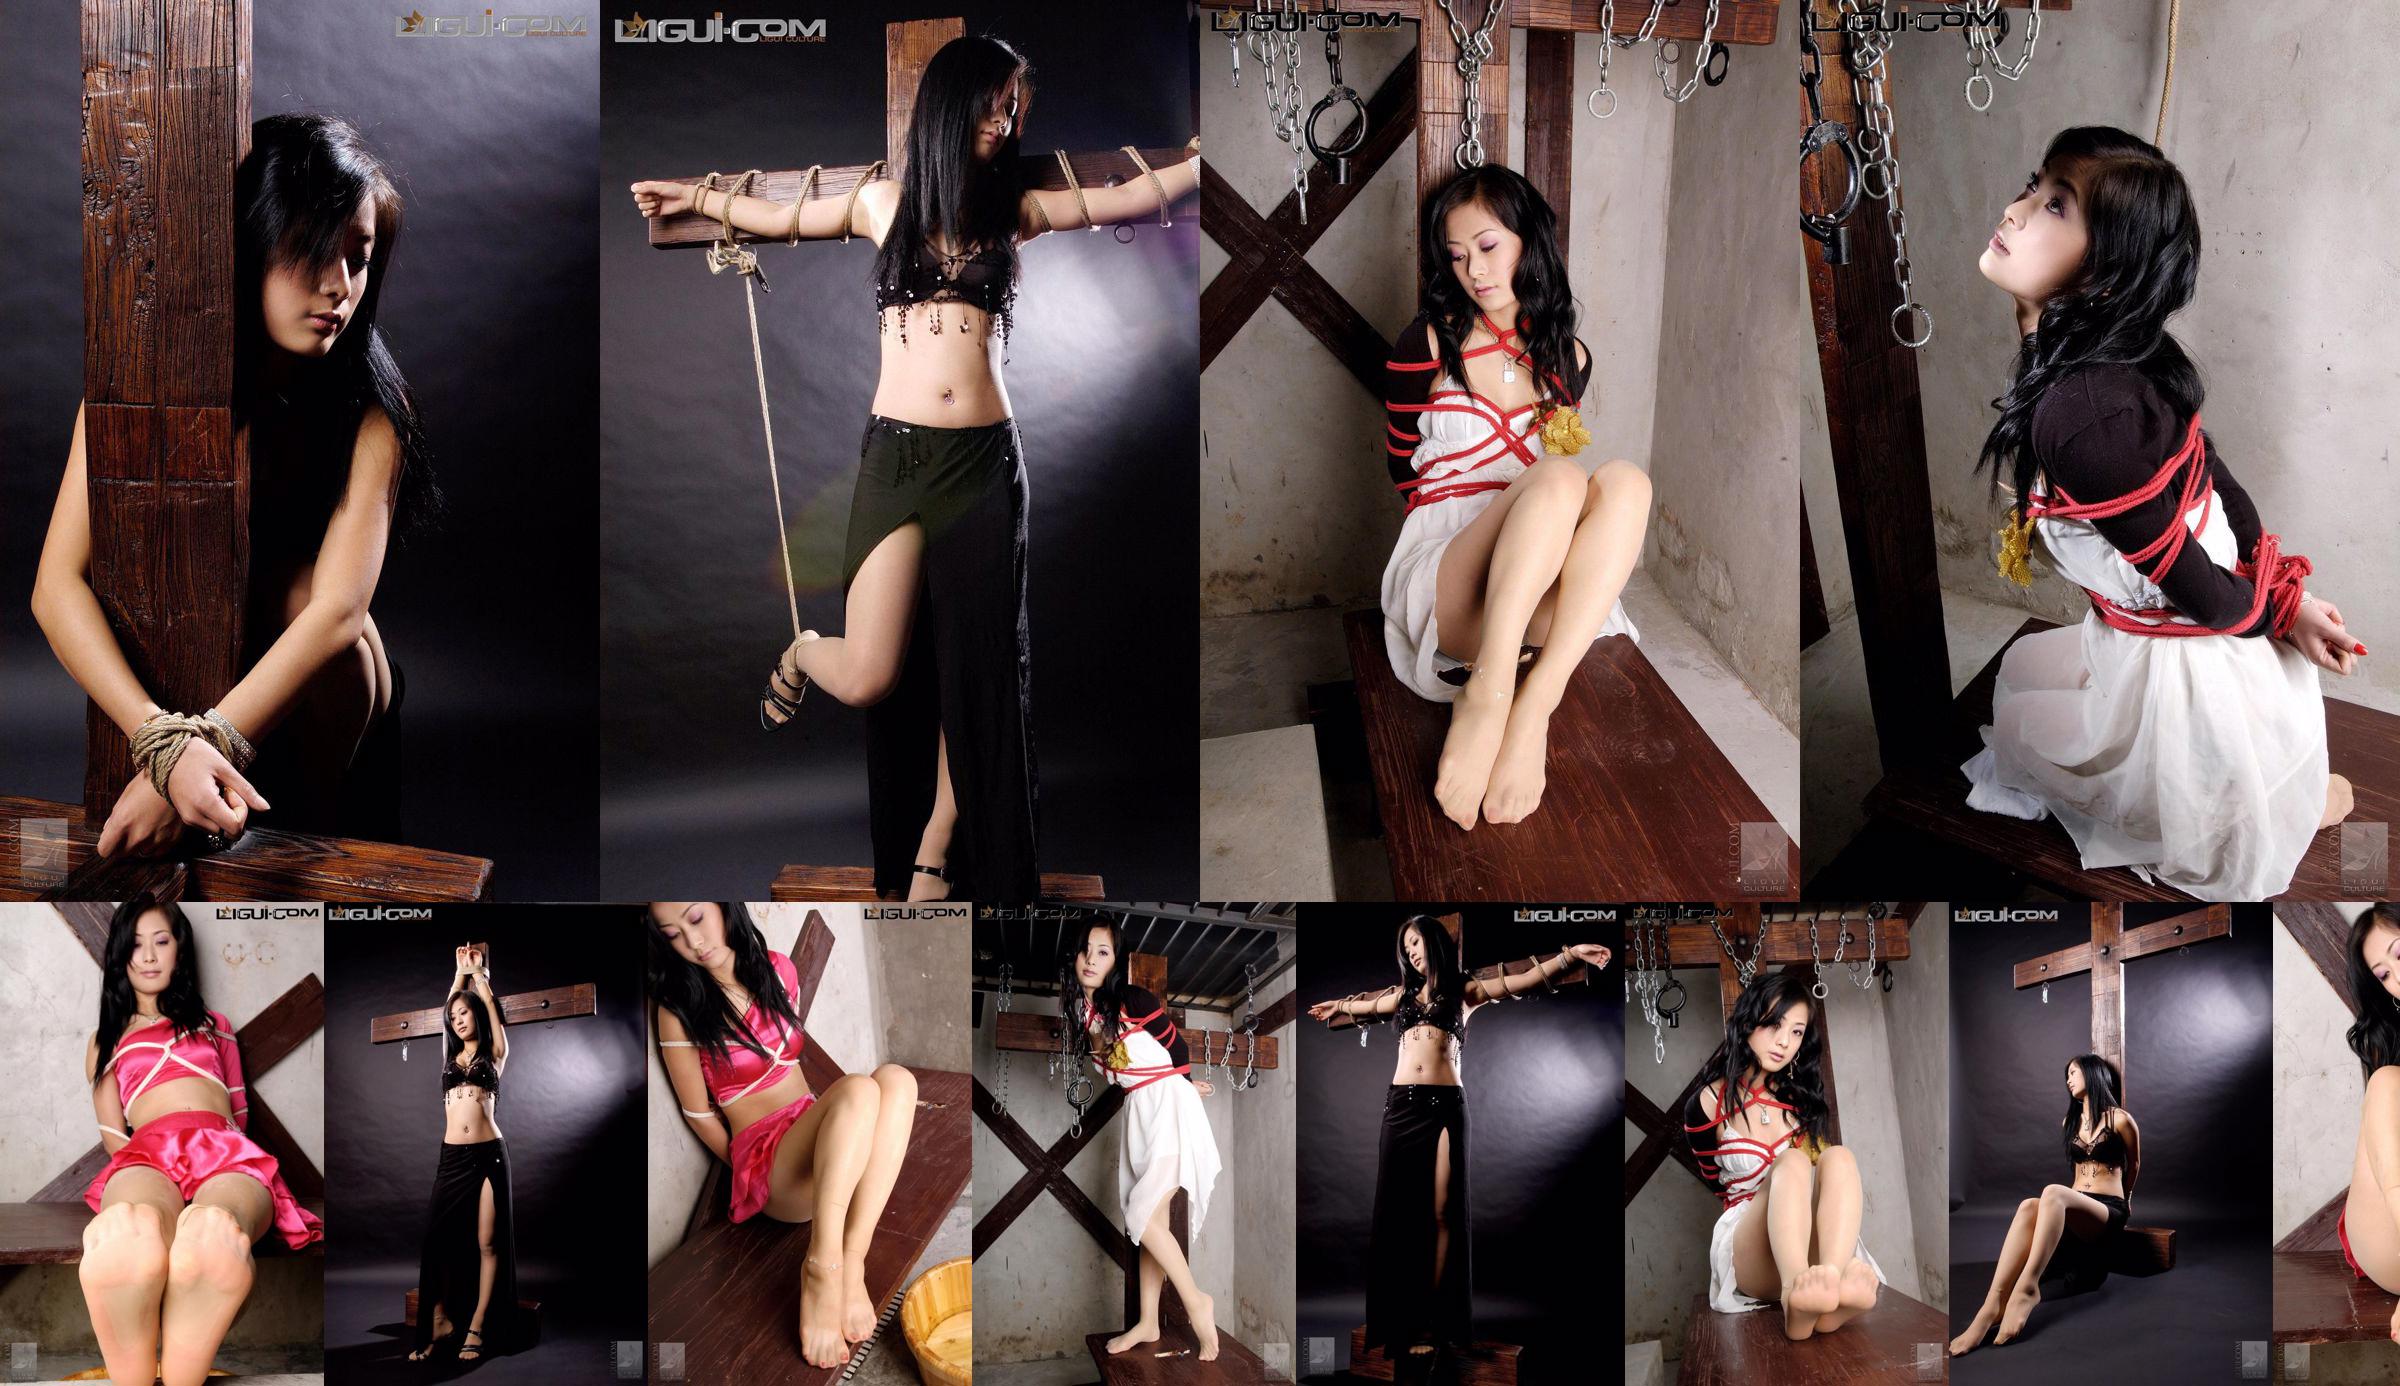 [Yuzumi Mitsuka LiGui] Zdjęcie modelki Saya „Związana czerwoną sznurem” Piękne nogi i nefrytowe stopy Zdjęcie No.01998d Strona 4